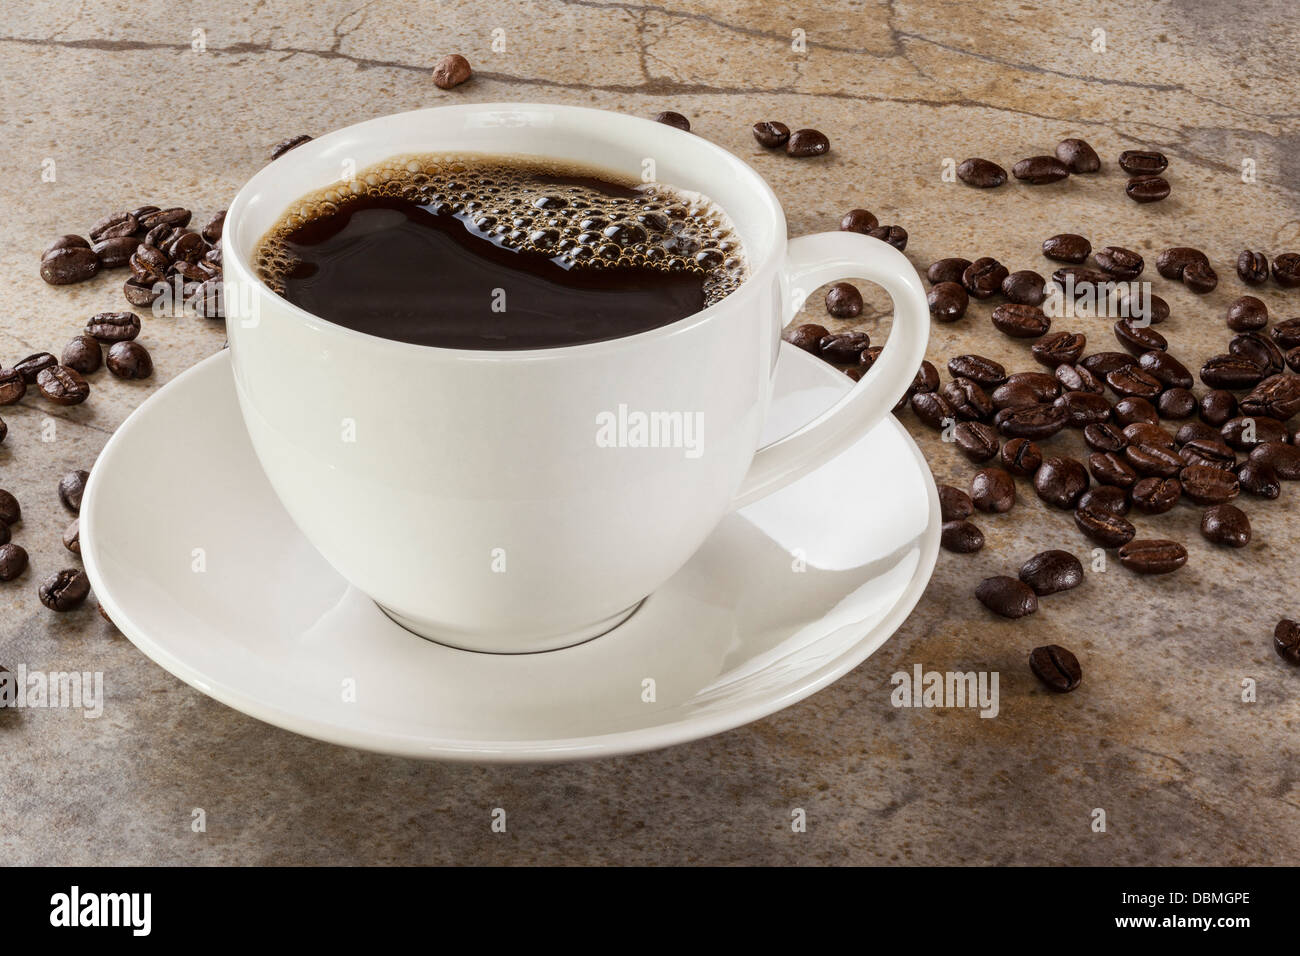 Taza de café en una mesa de mármol, con granos de café esparcidos alrededor. Foco de delante hacia atrás. Foto de stock